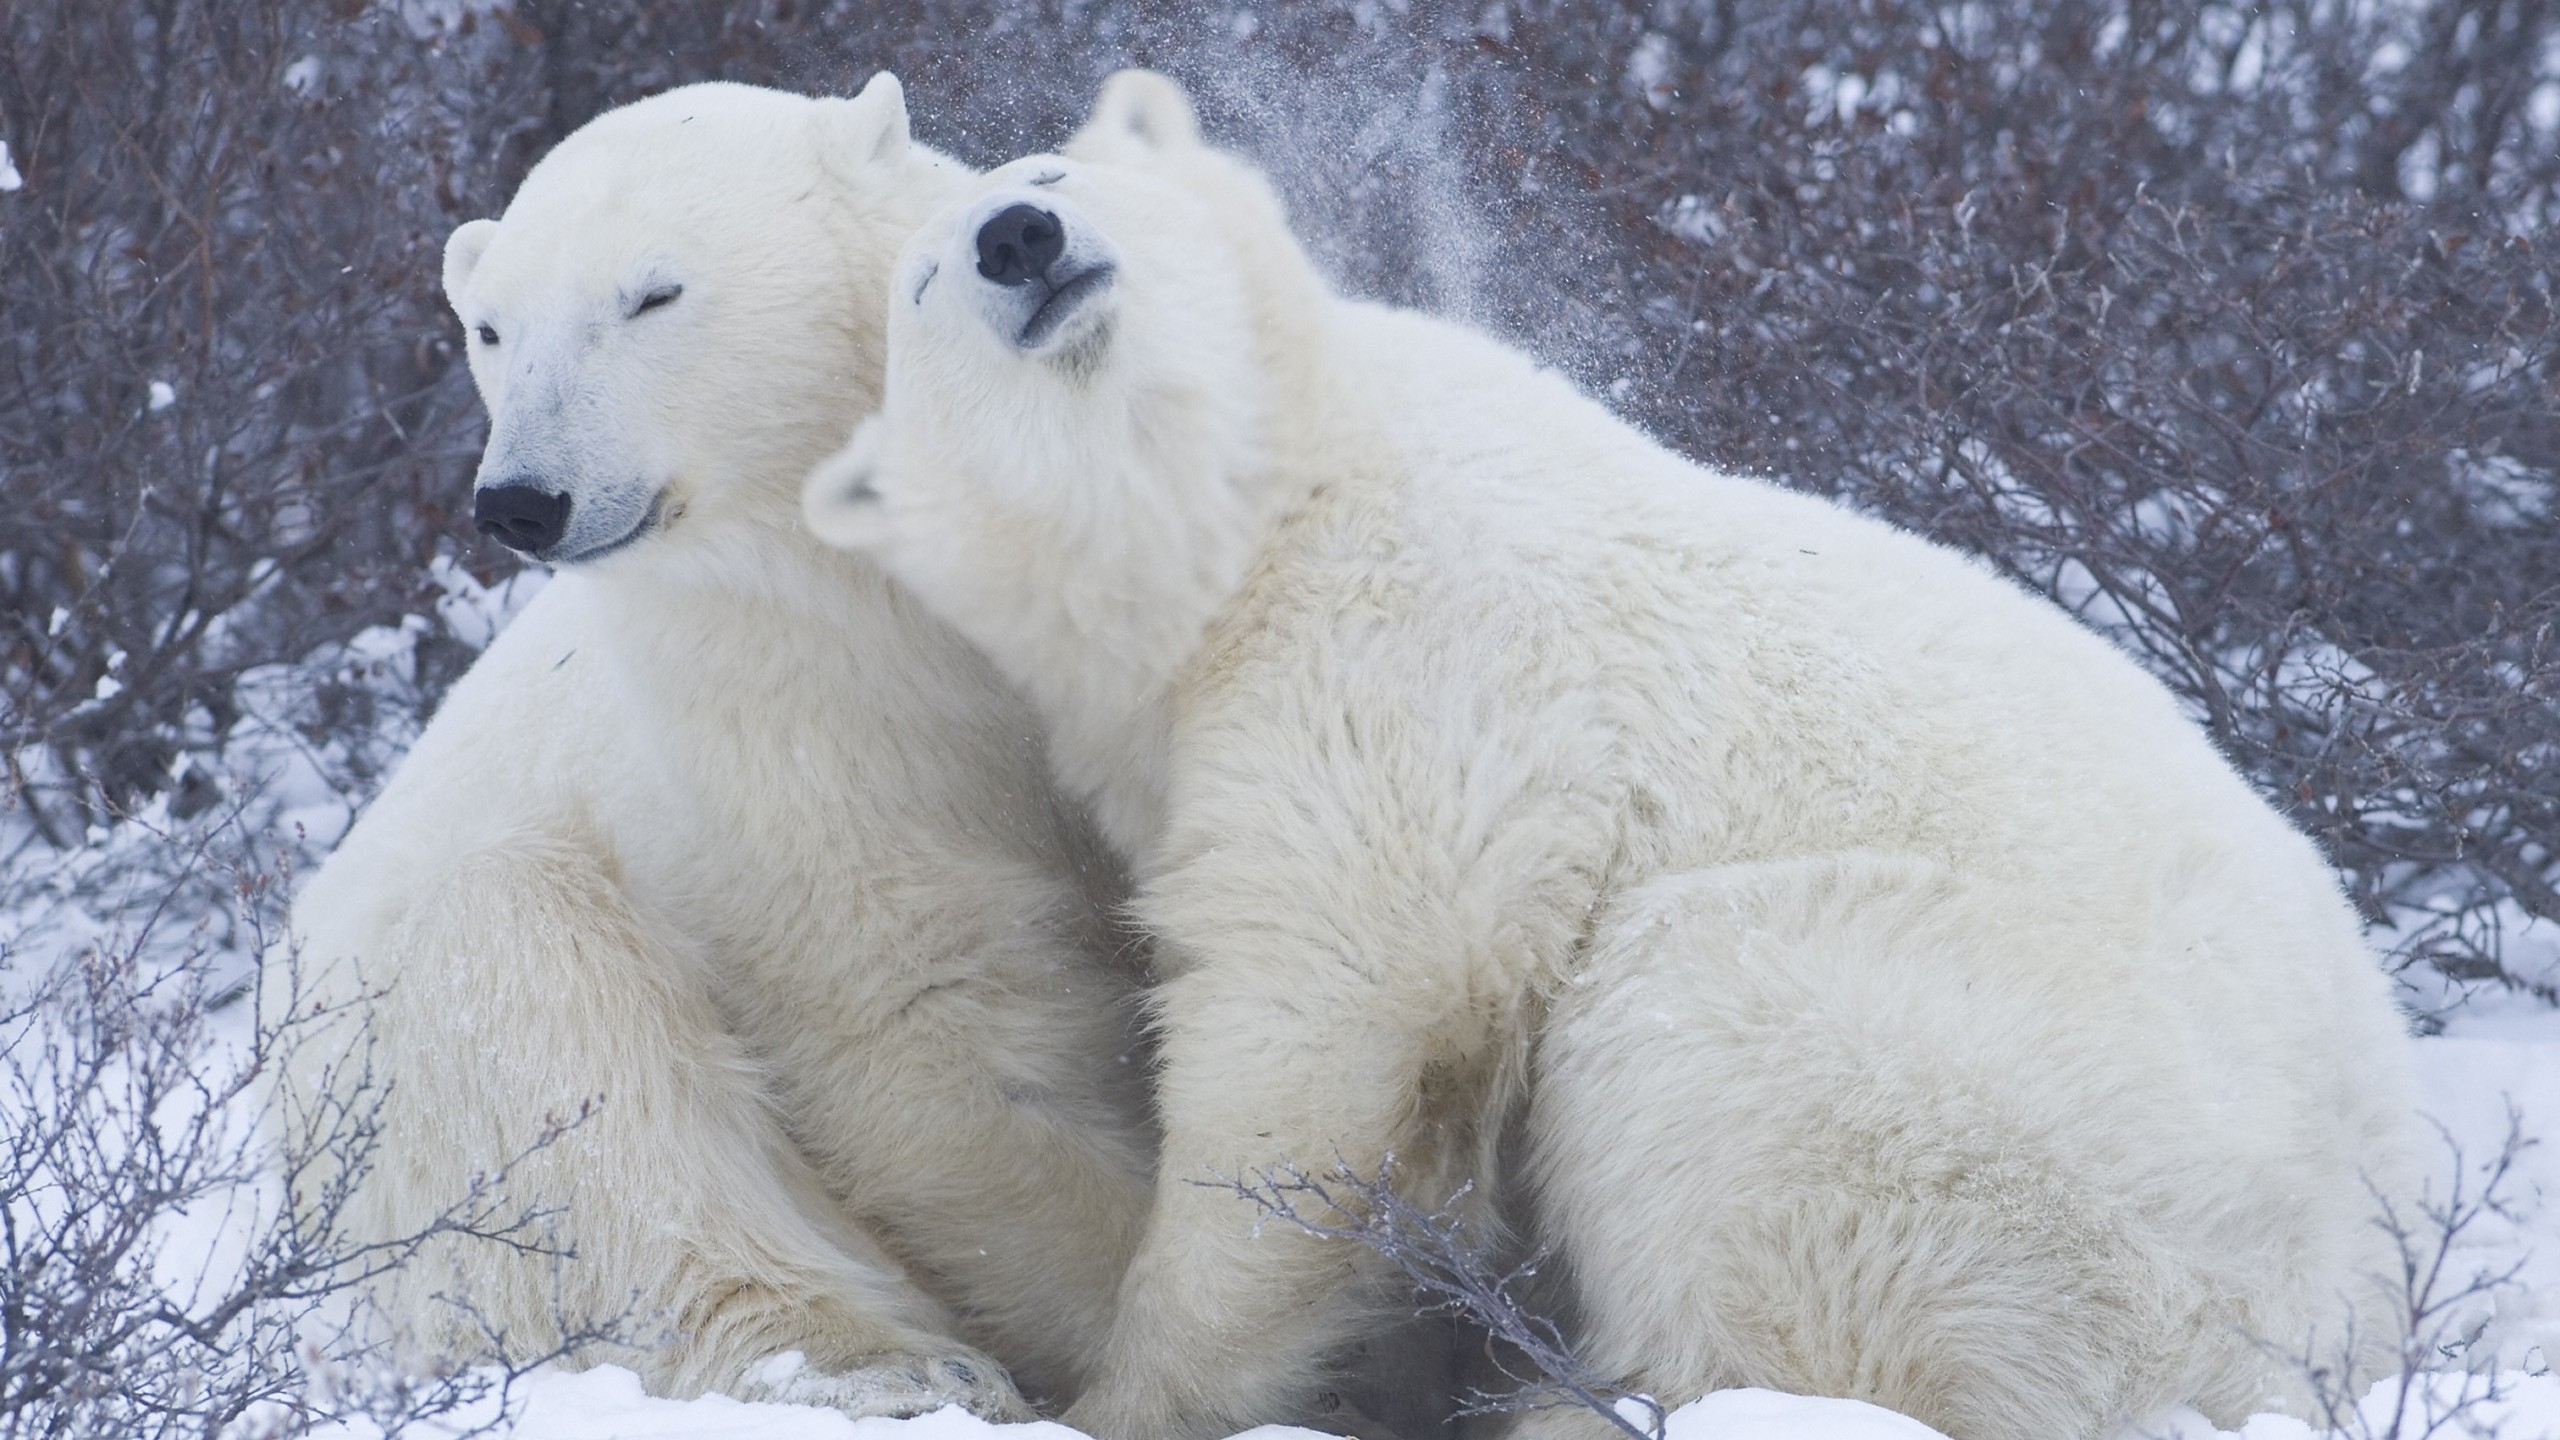 Cute Polar Bears for 2560x1440 HDTV resolution